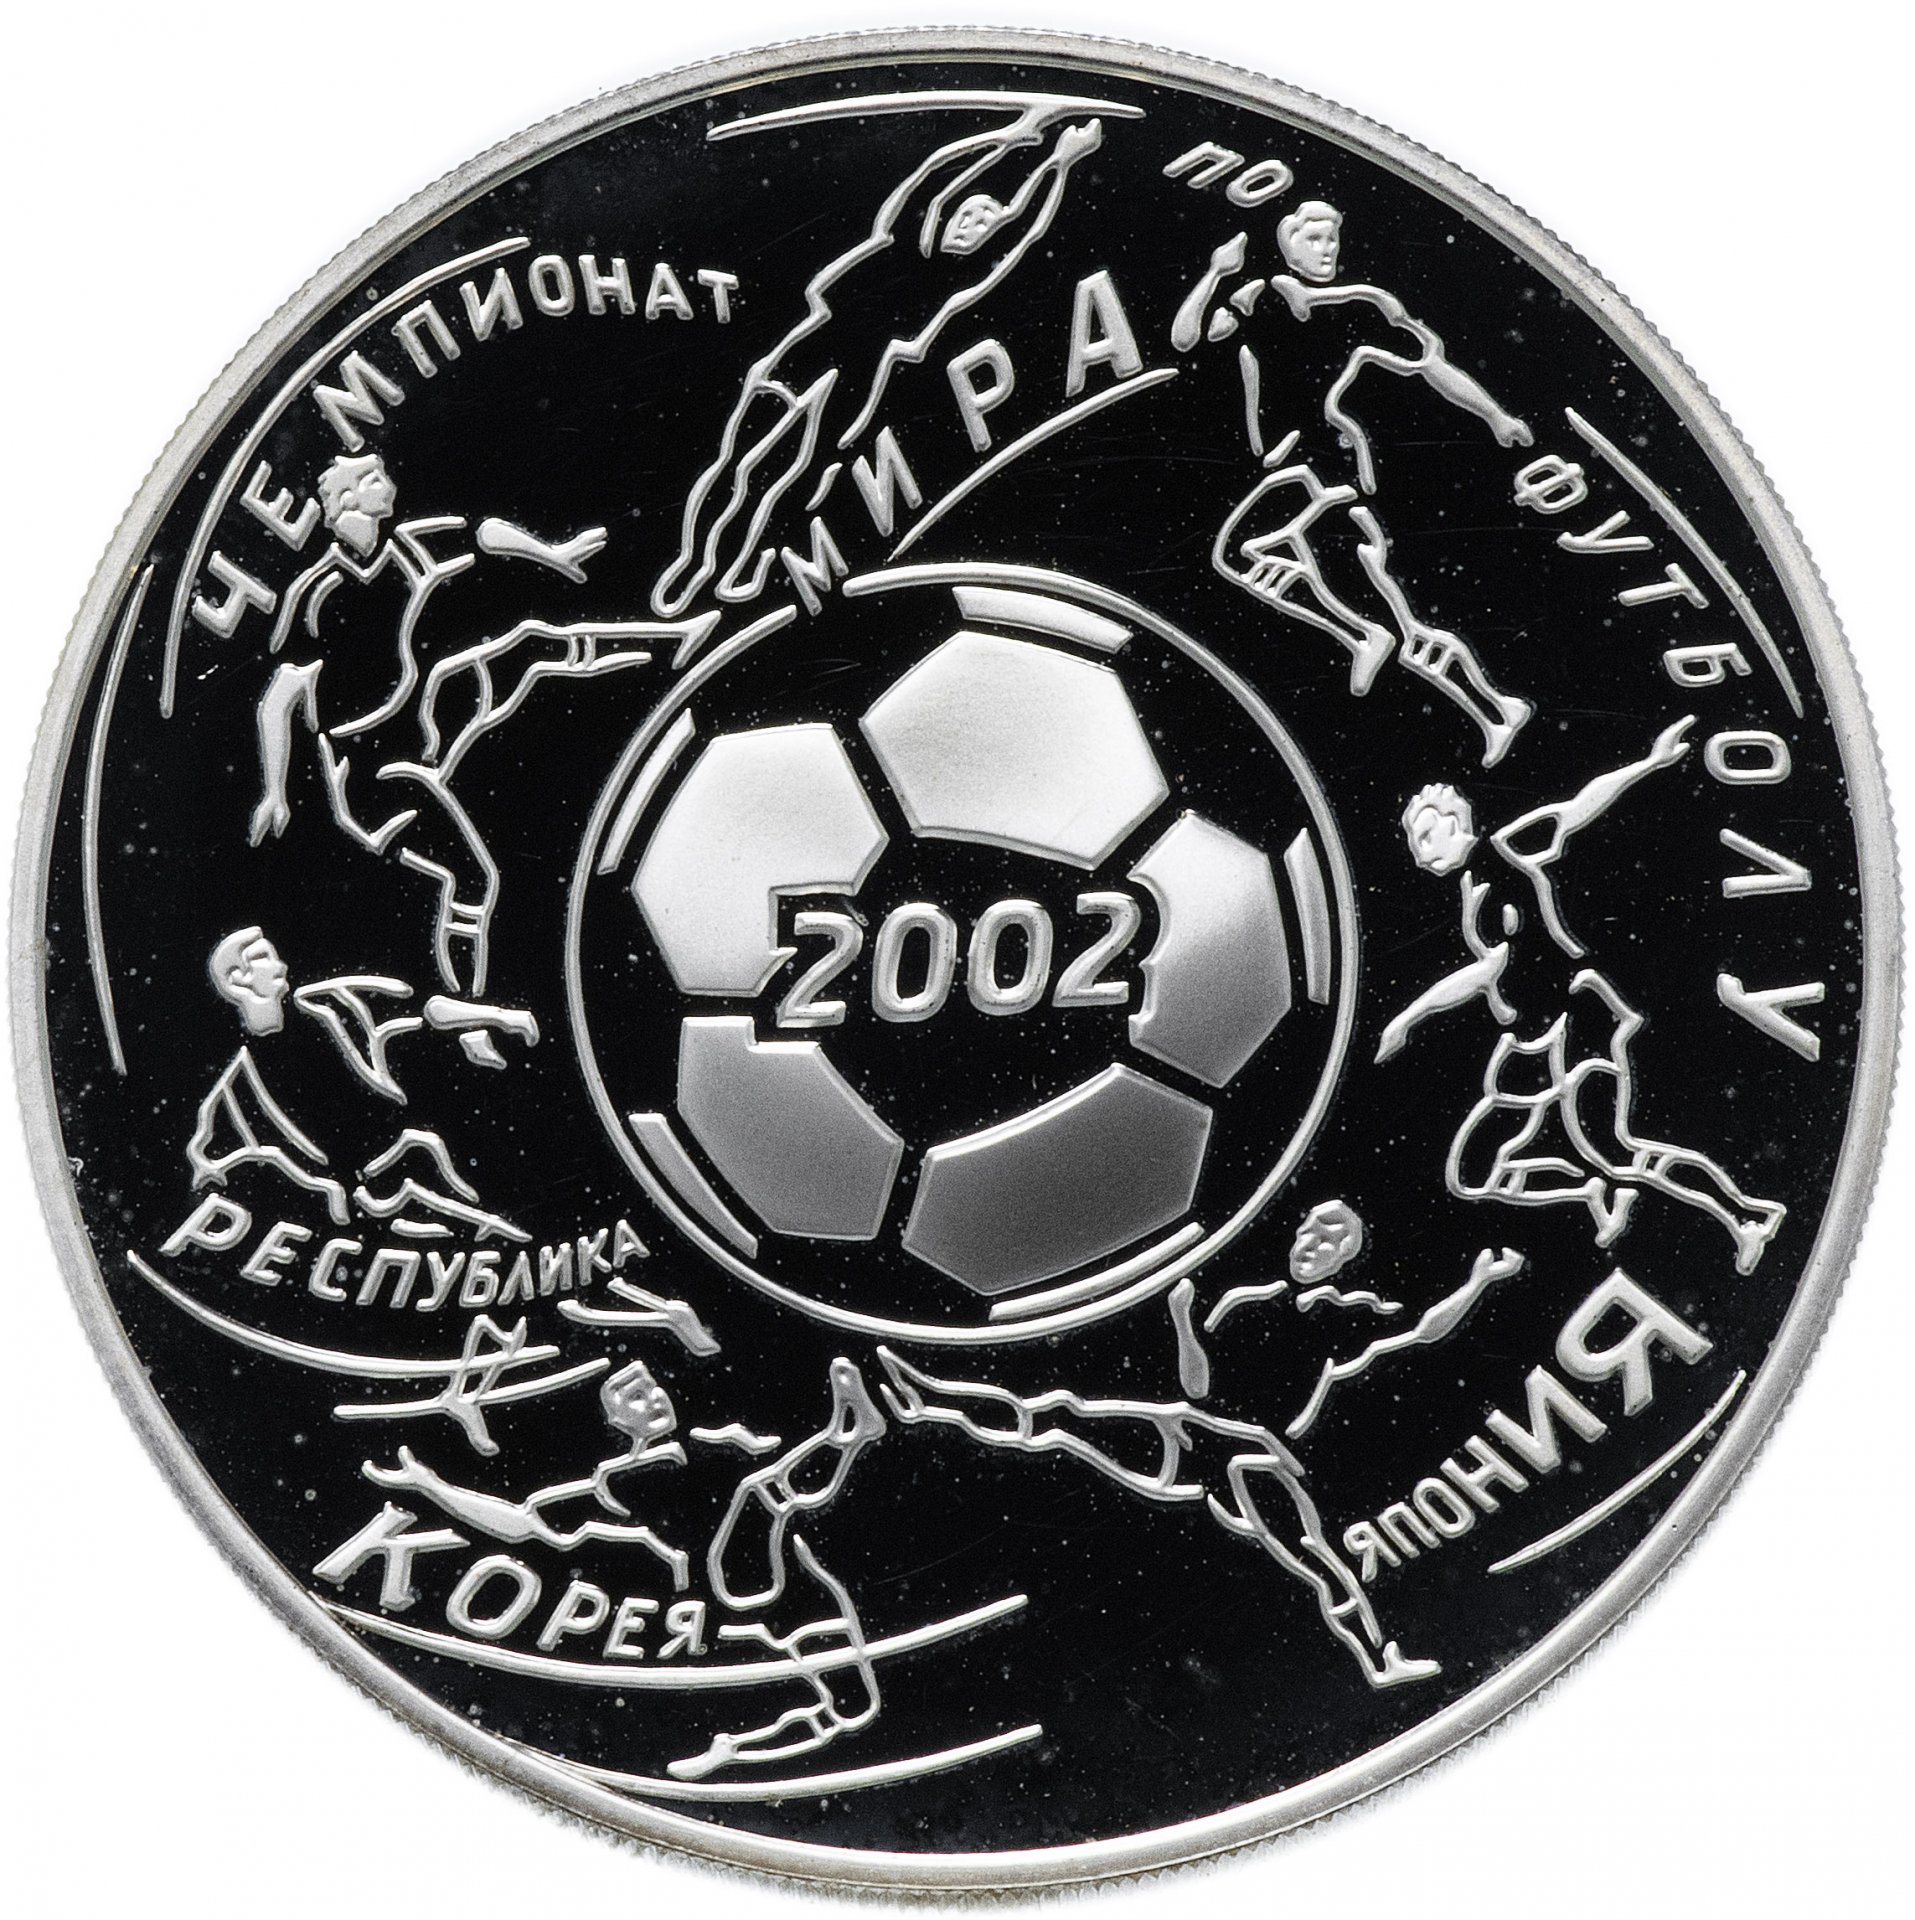 Футбол серебро результаты. Монеты футбольной тематики. Монеты коллекционные футбольные. Коллекционные монеты с футболистами.